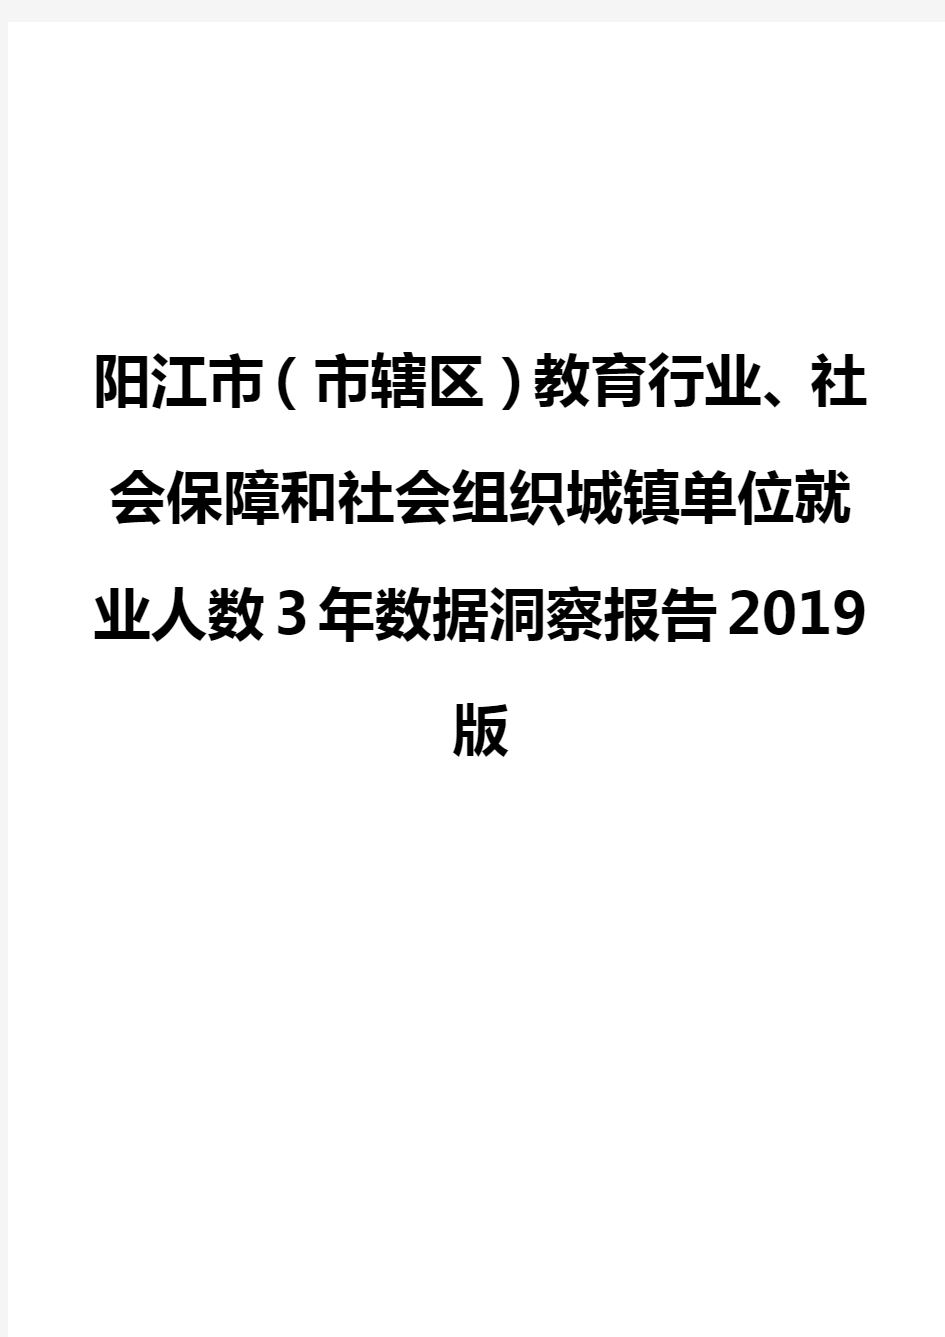 阳江市(市辖区)教育行业、社会保障和社会组织城镇单位就业人数3年数据洞察报告2019版